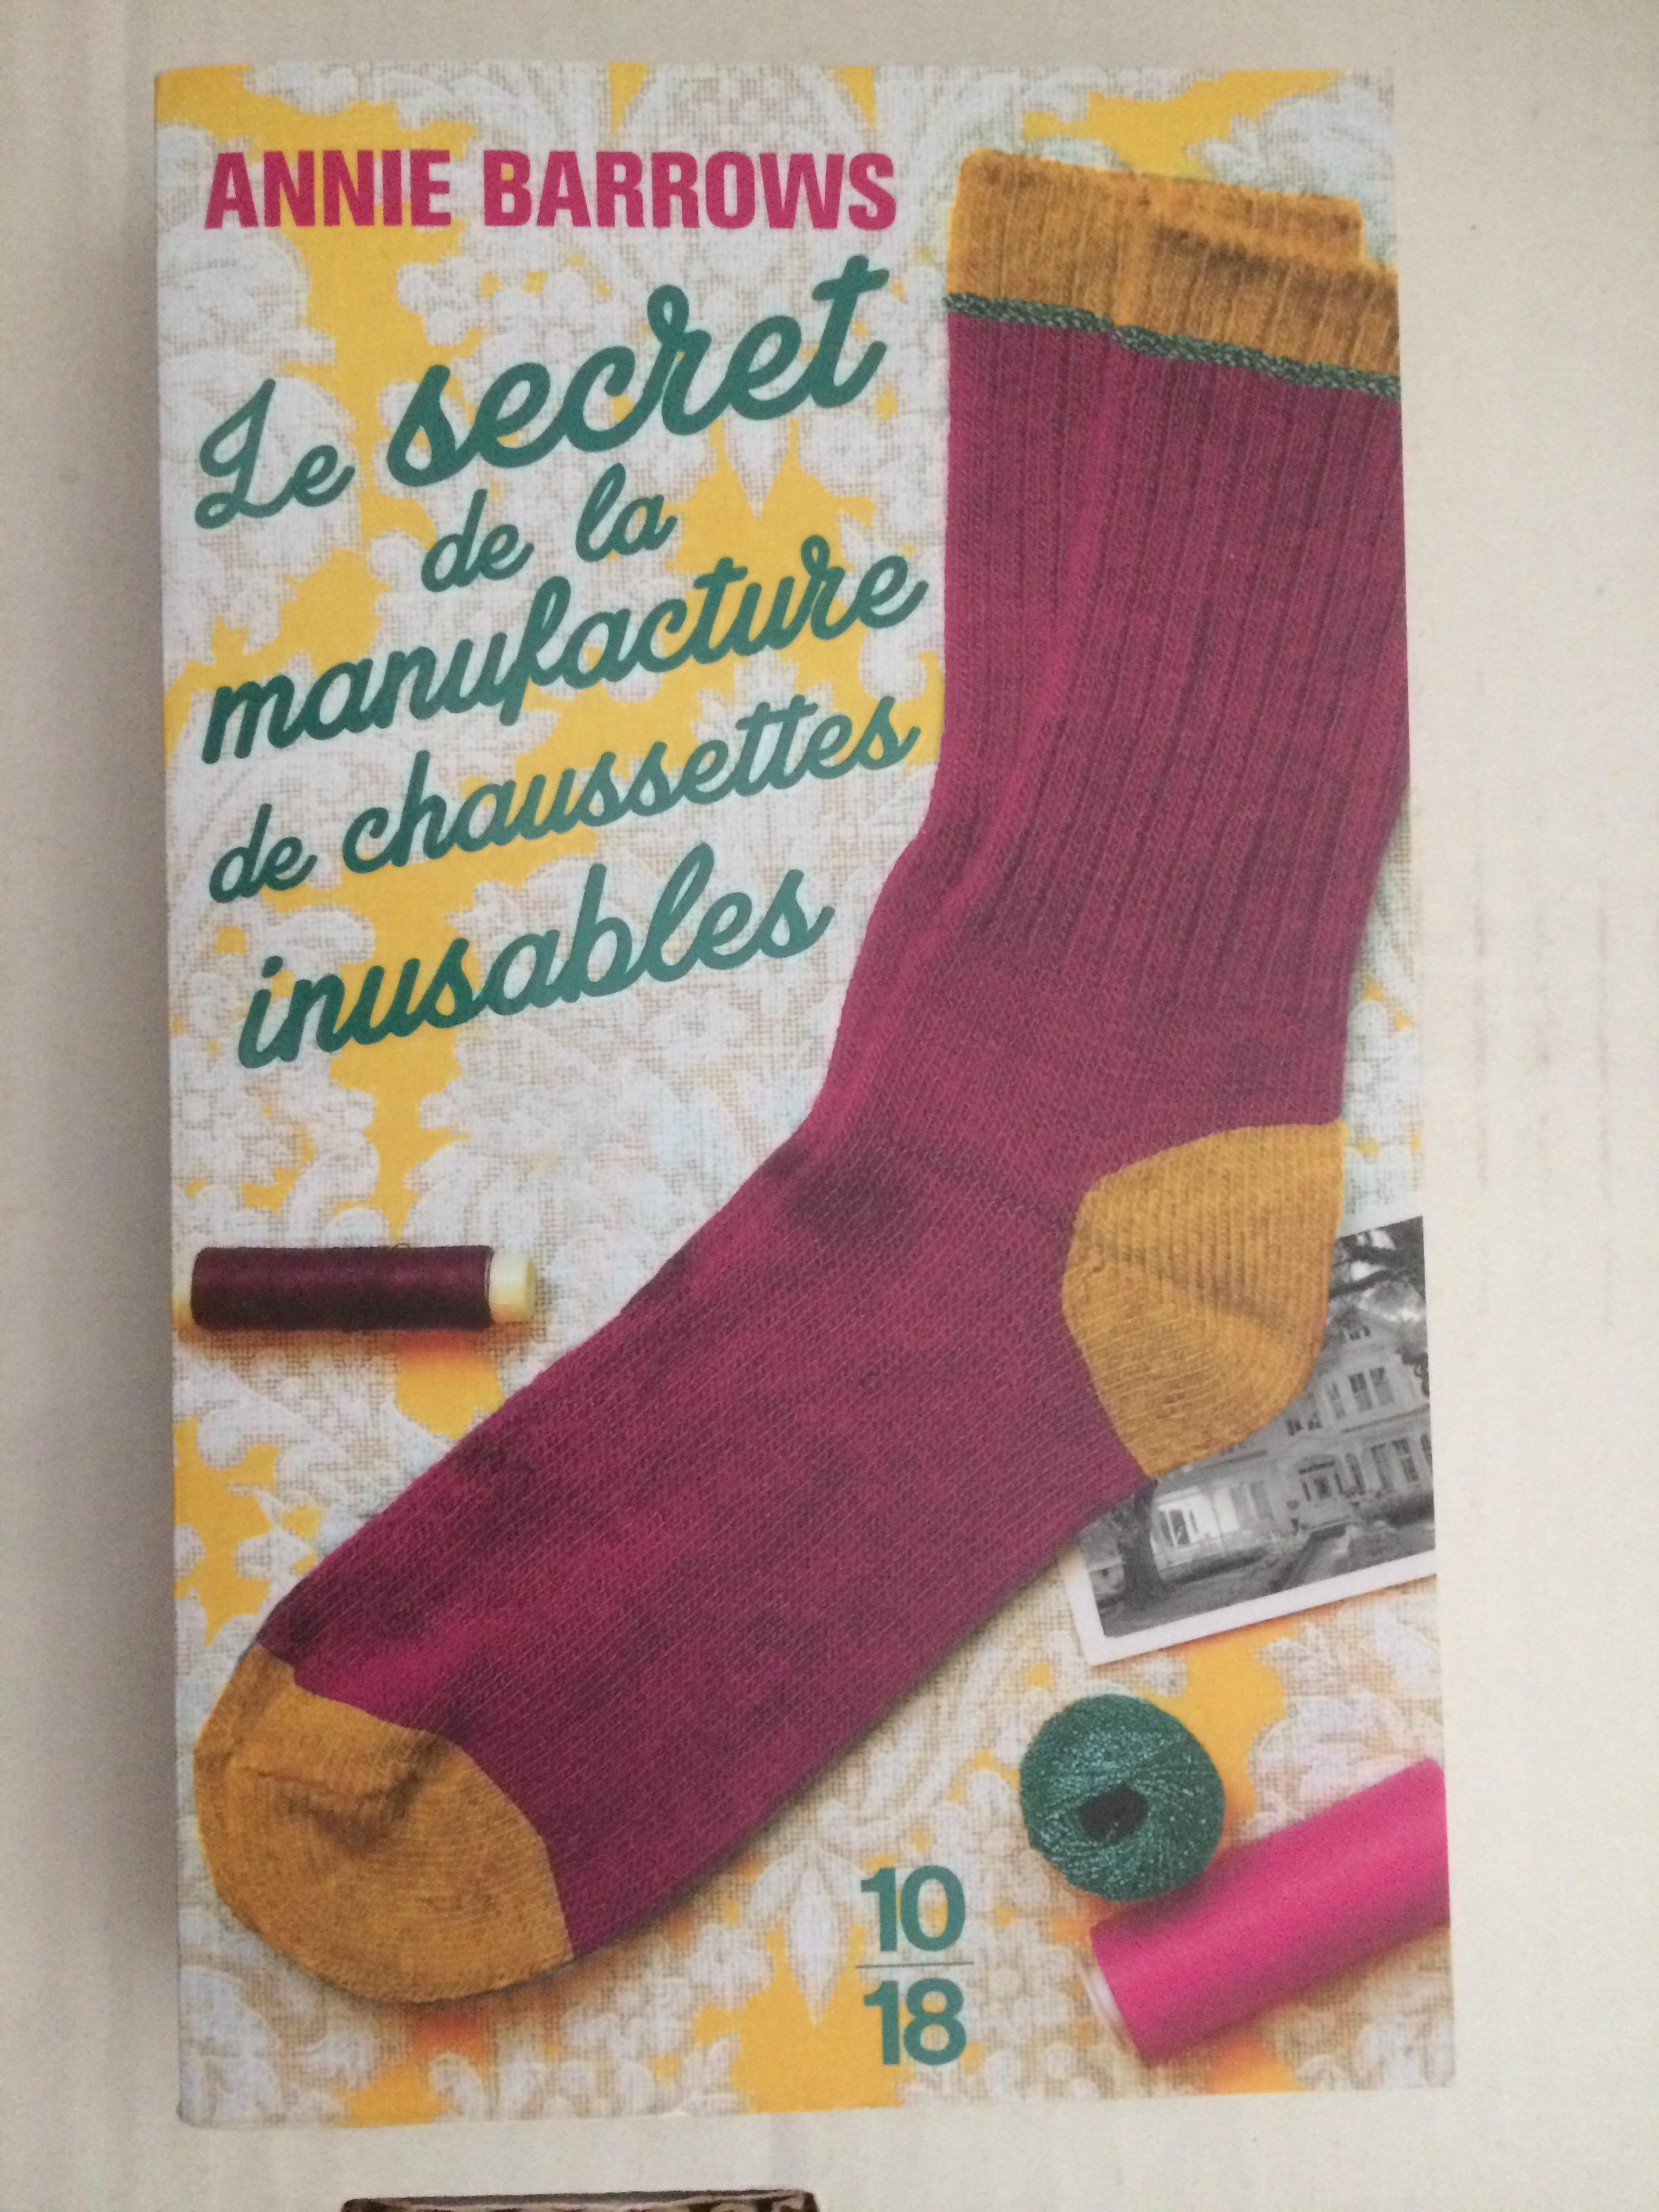 troc de troc le secret de la manufacture de chaussettes inusables/annie barrow image 0